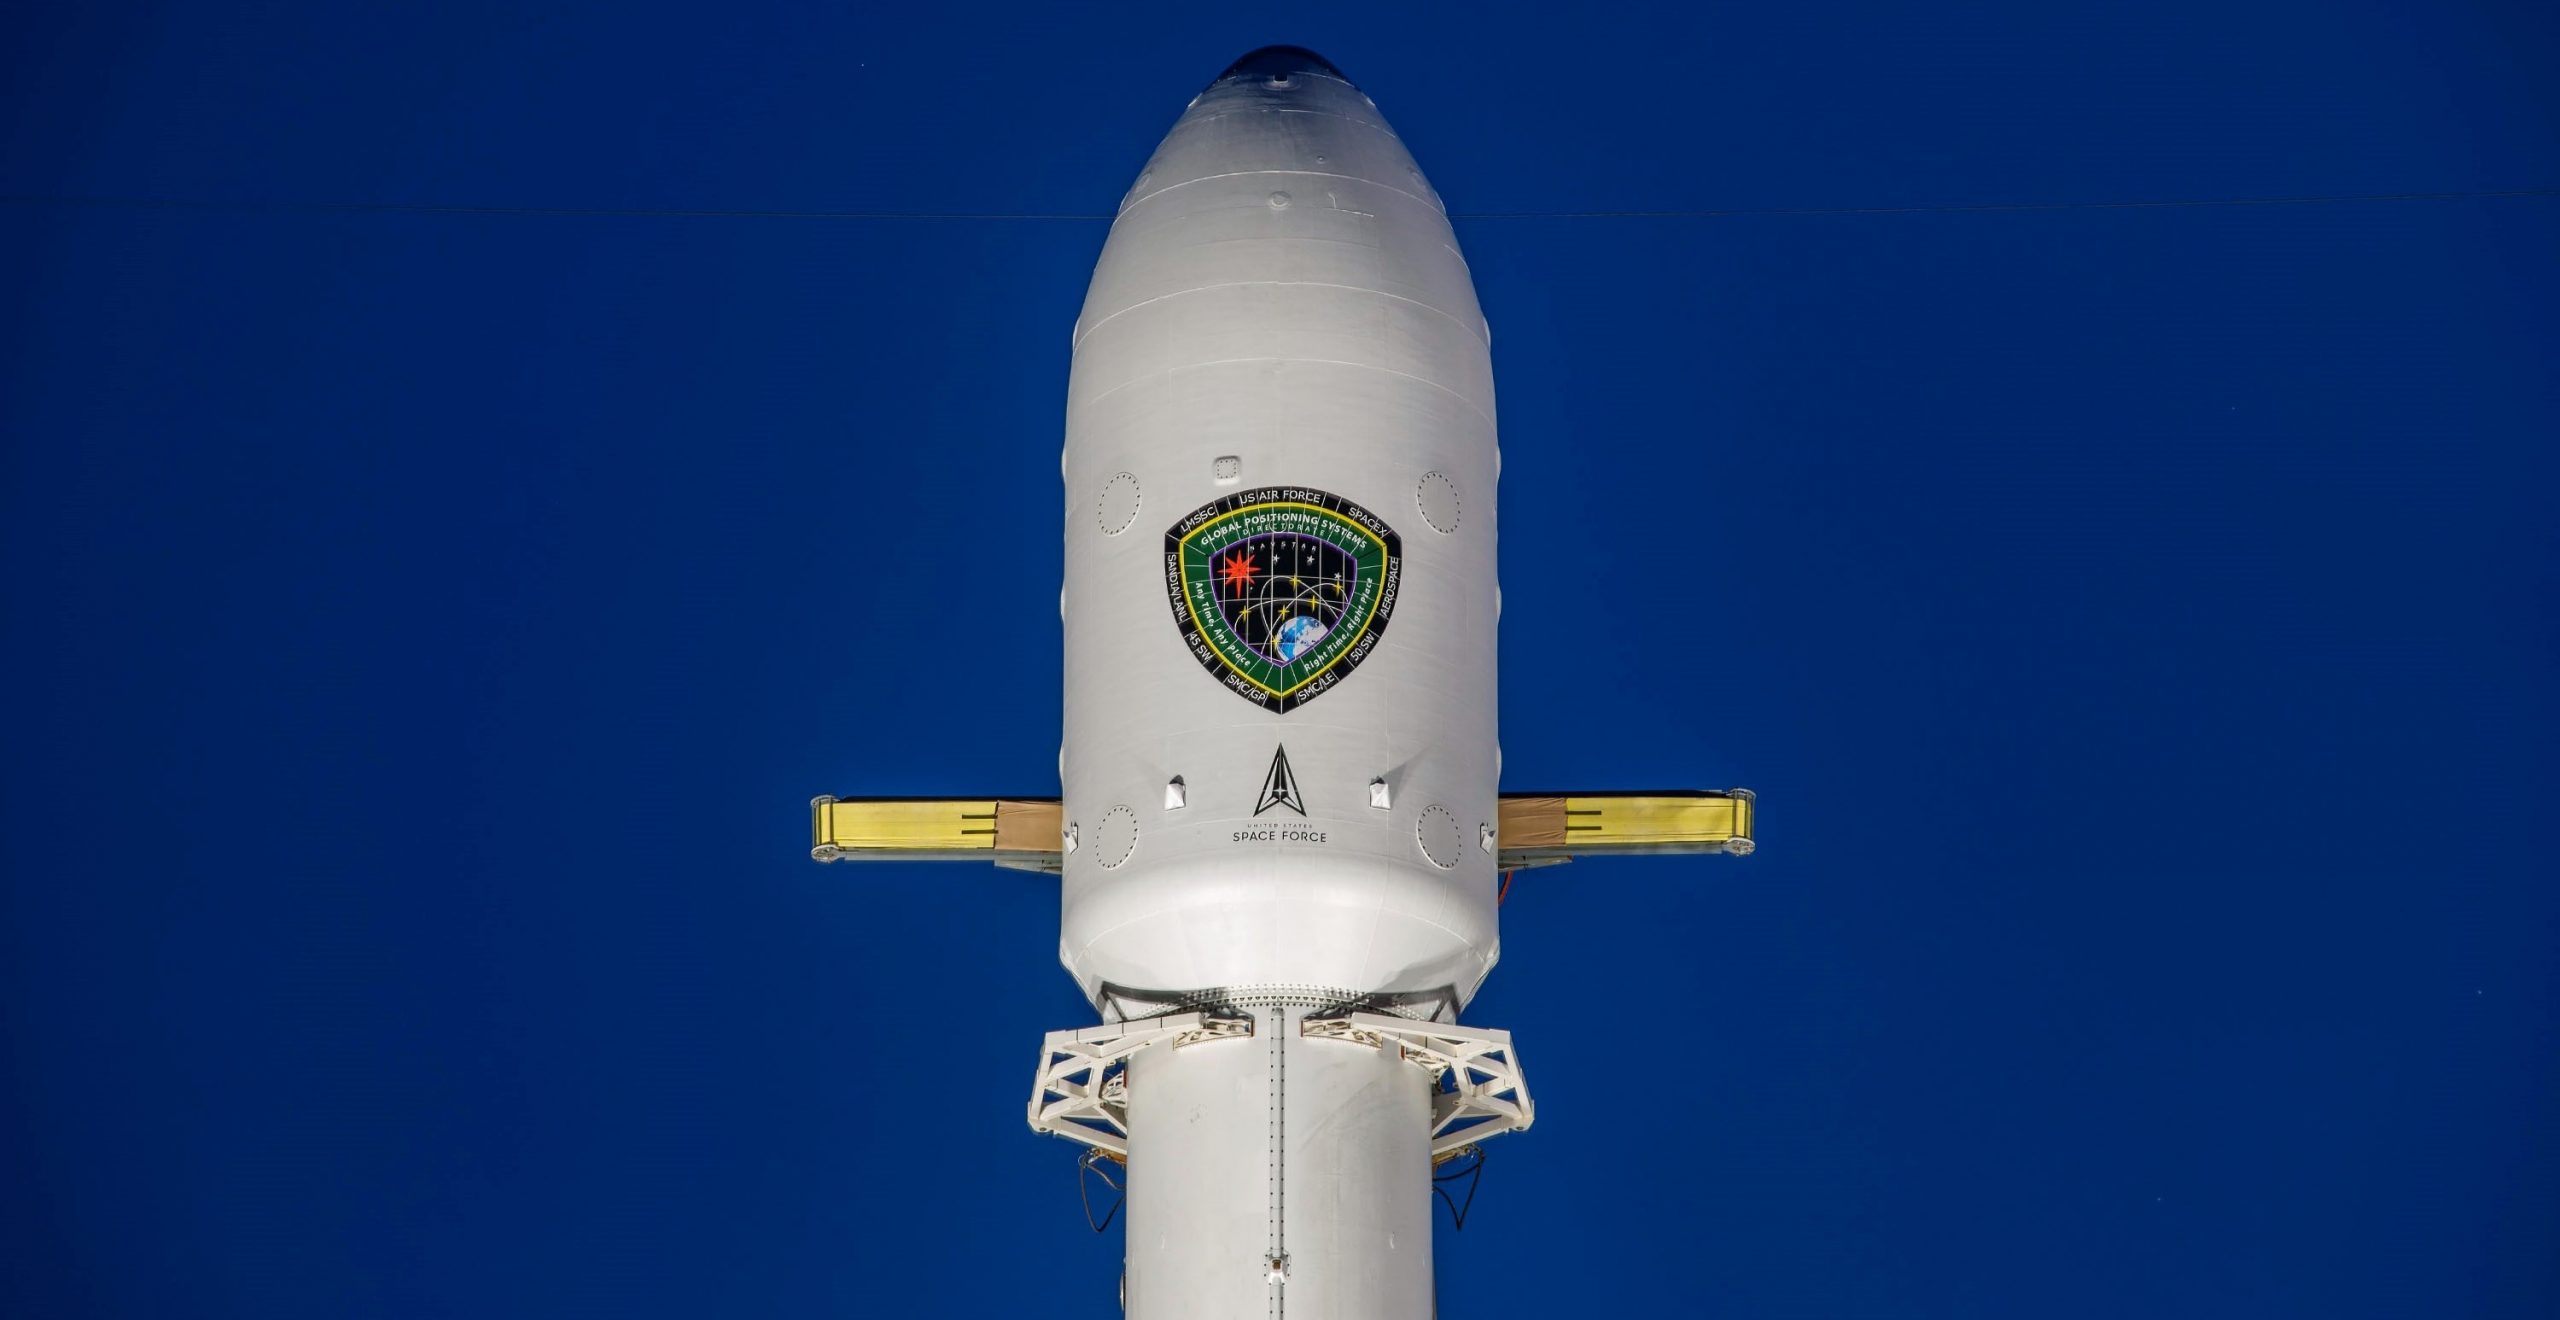 GPS III SV04 Falcon 9 B1060 LC-40 100120 (SpaceX) 1 crop